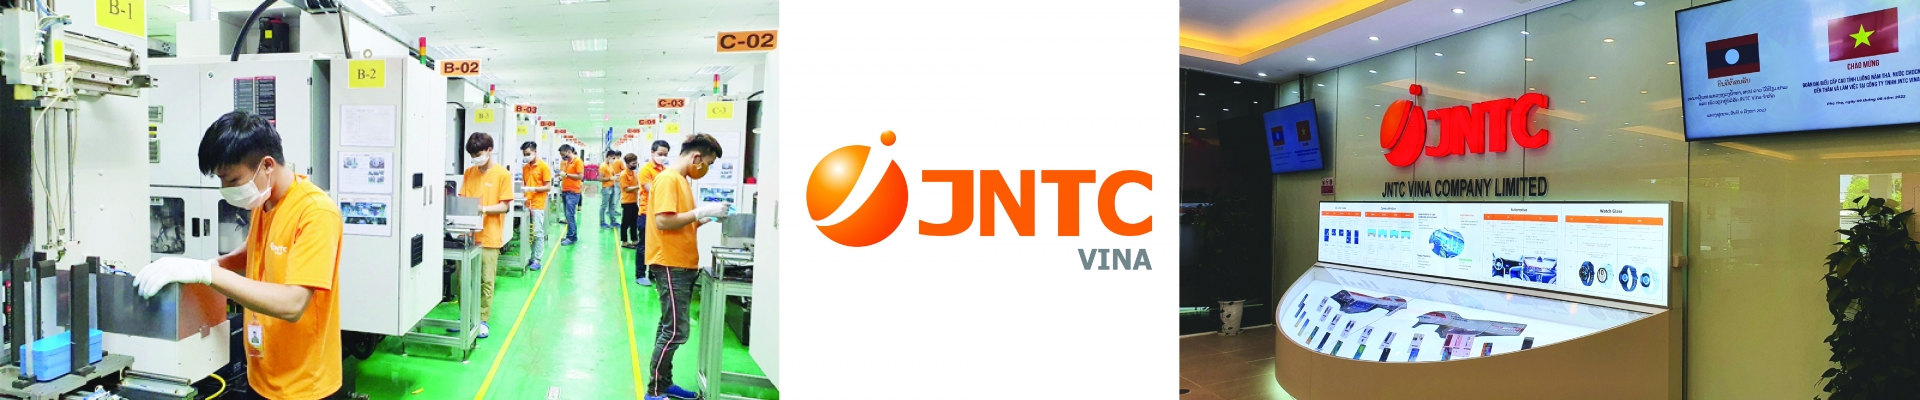 Công ty TNHH JNTC Vina